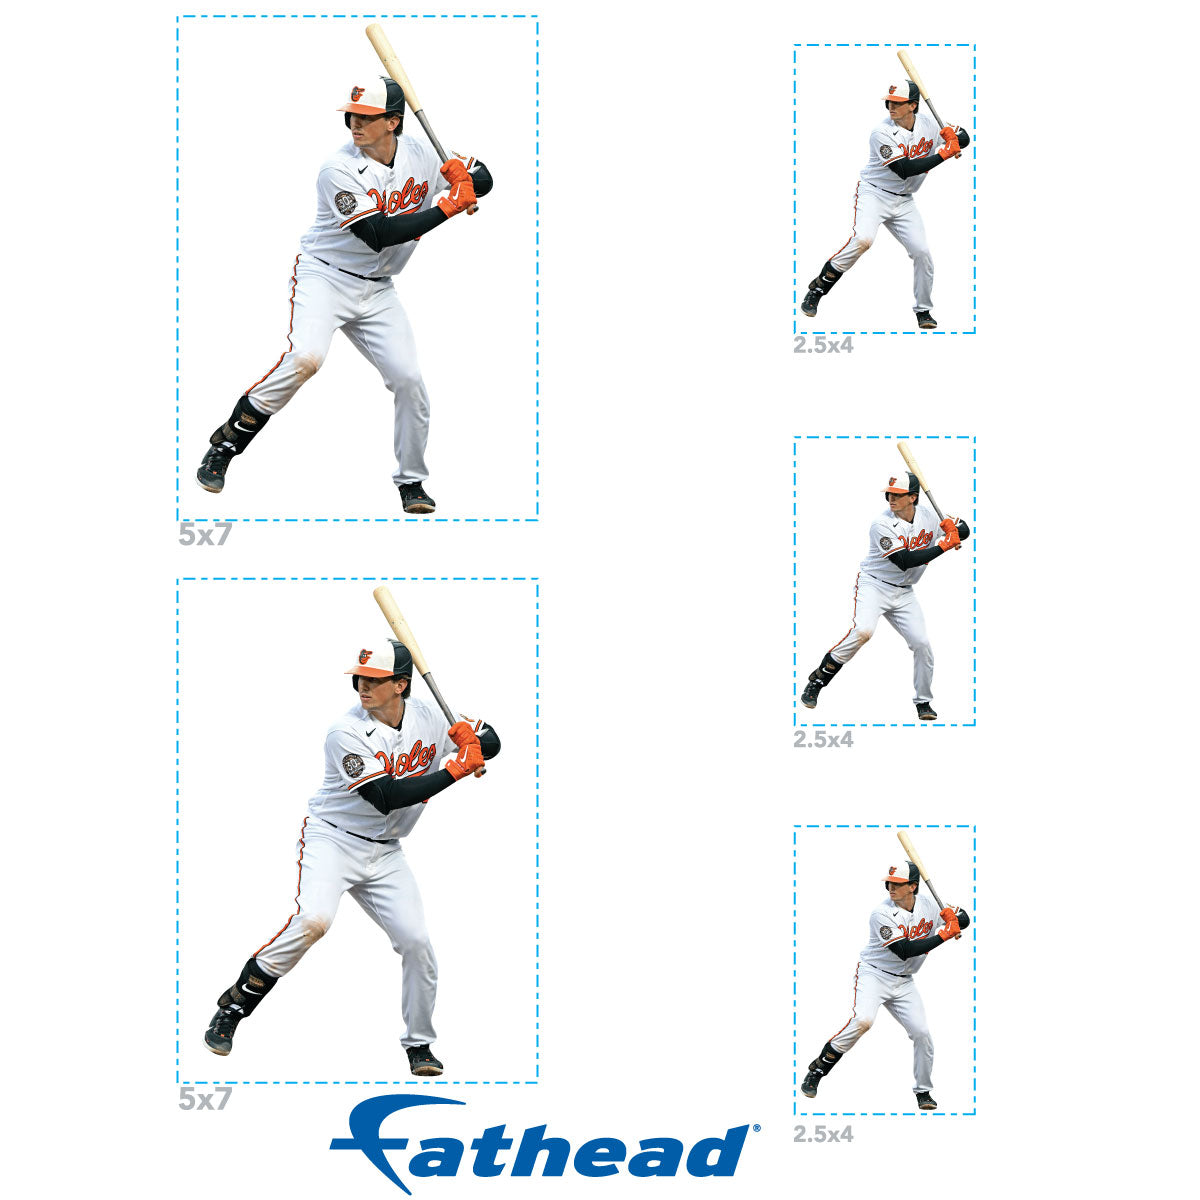 Baltimore Orioles: Adley Rutschman 2022 Mini Cardstock Cutout